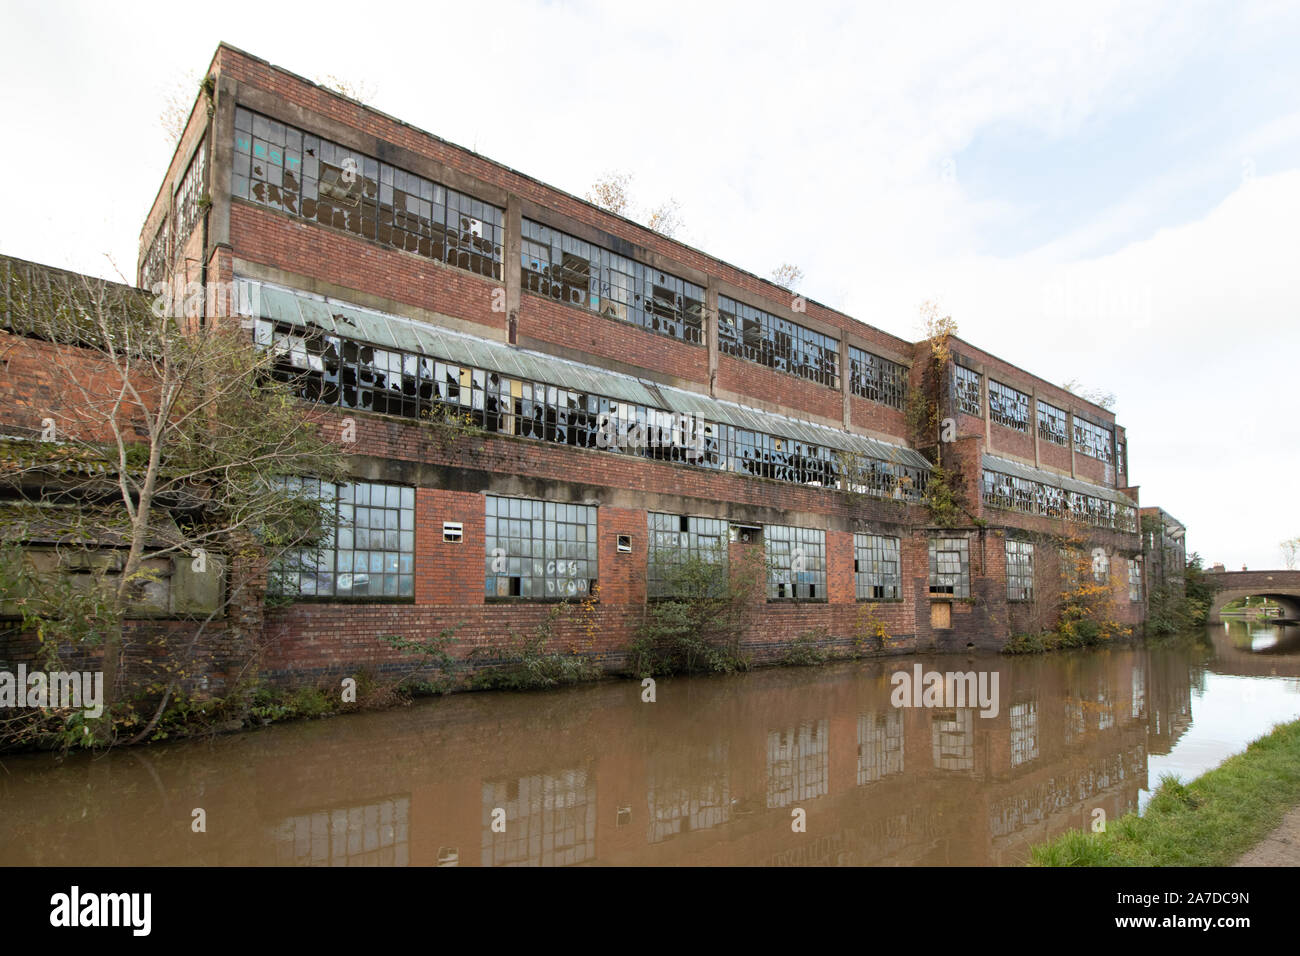 Atherstone hat factory, Coventry canal, Atherstone. L'edificio fatiscente è rimasto vuoto ed è ora impostato per diventare sede per gli anziani. Foto Stock